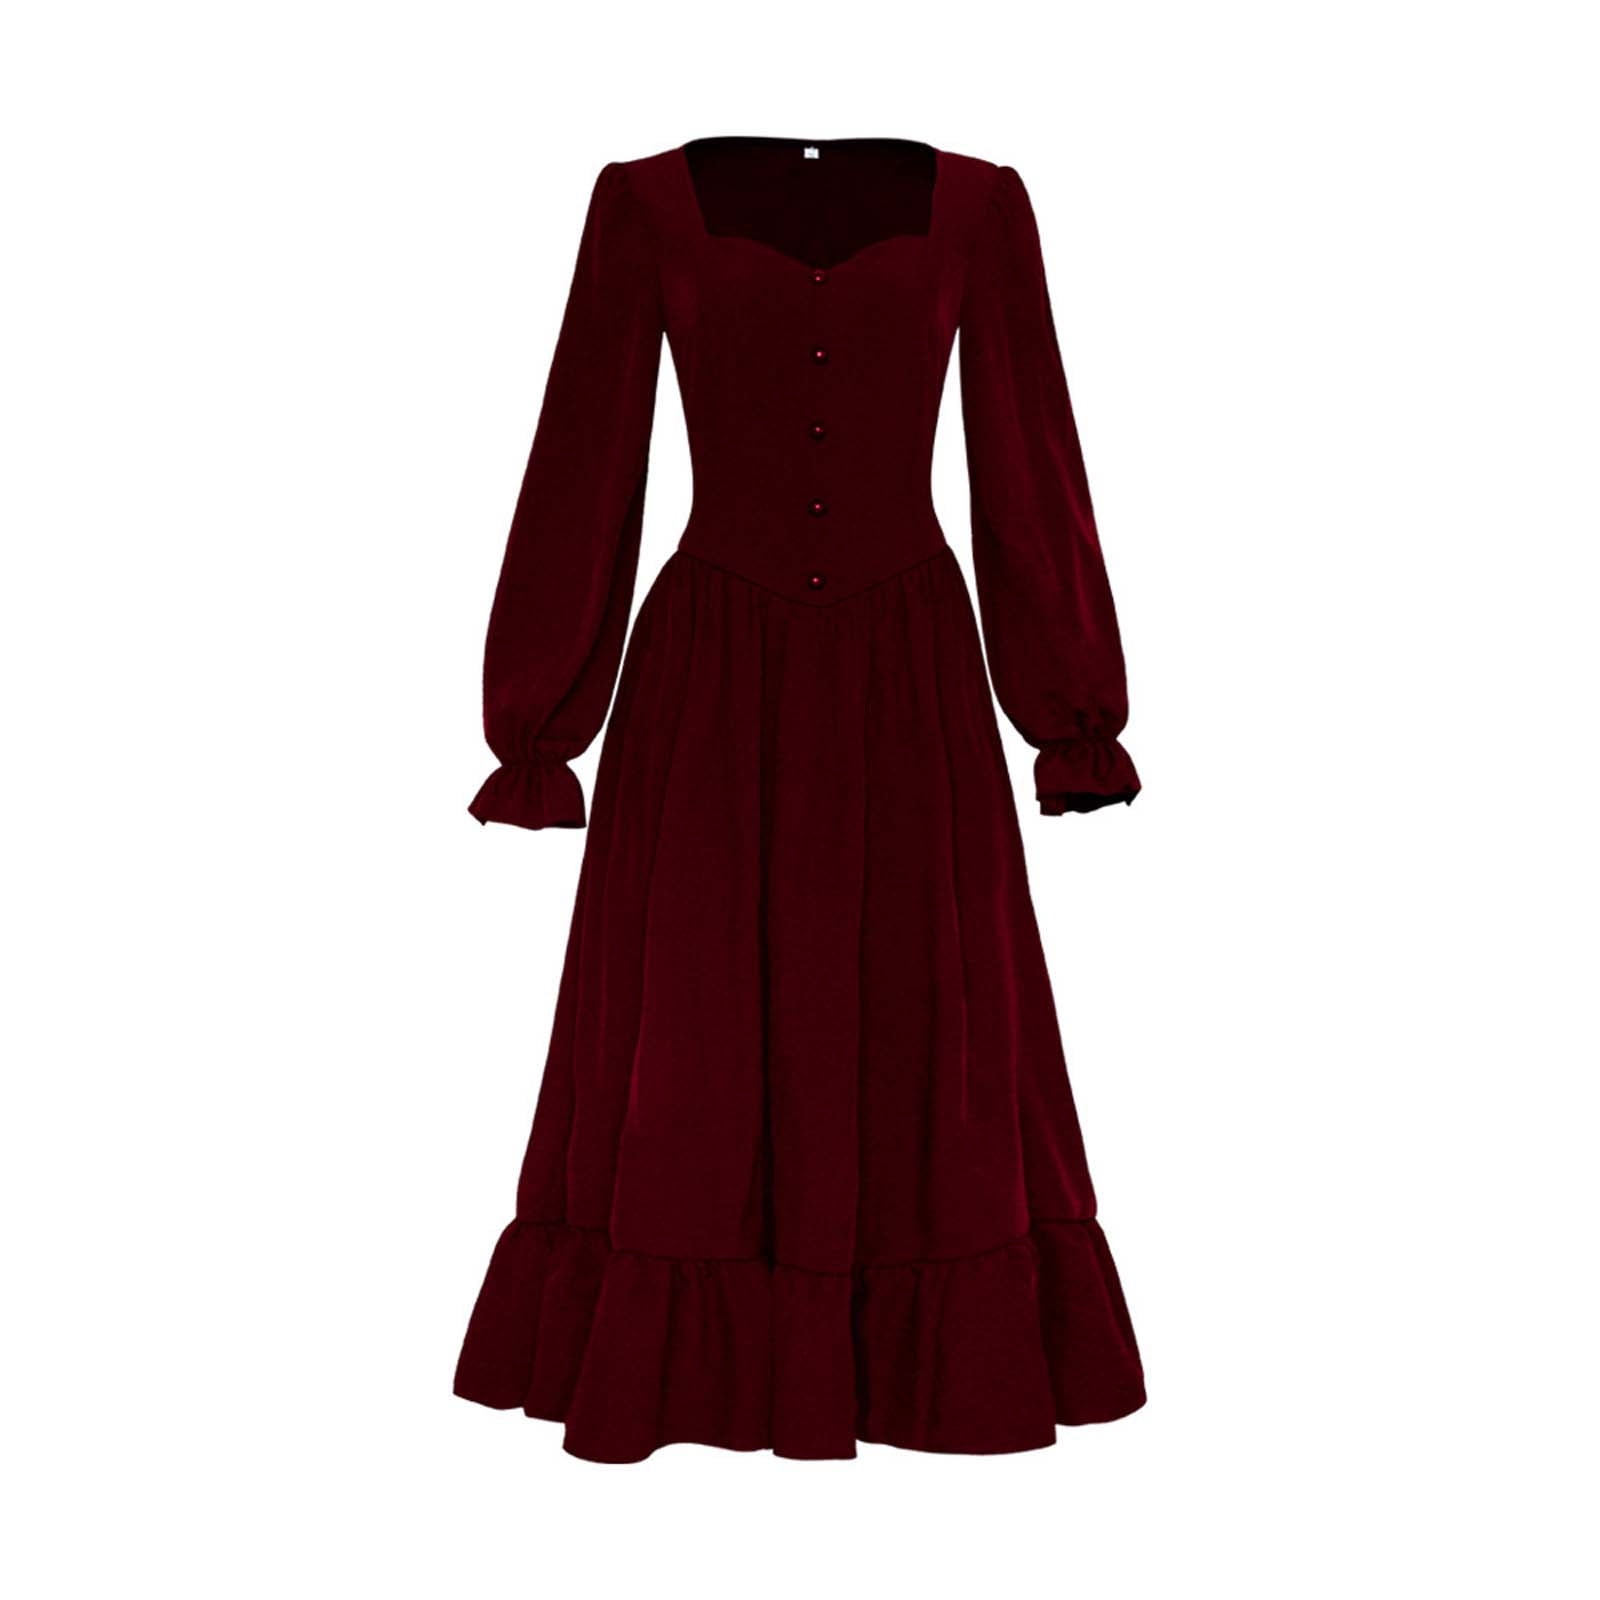 Gothic Dress Women Medieval Renaissance Dress Sale Clearance